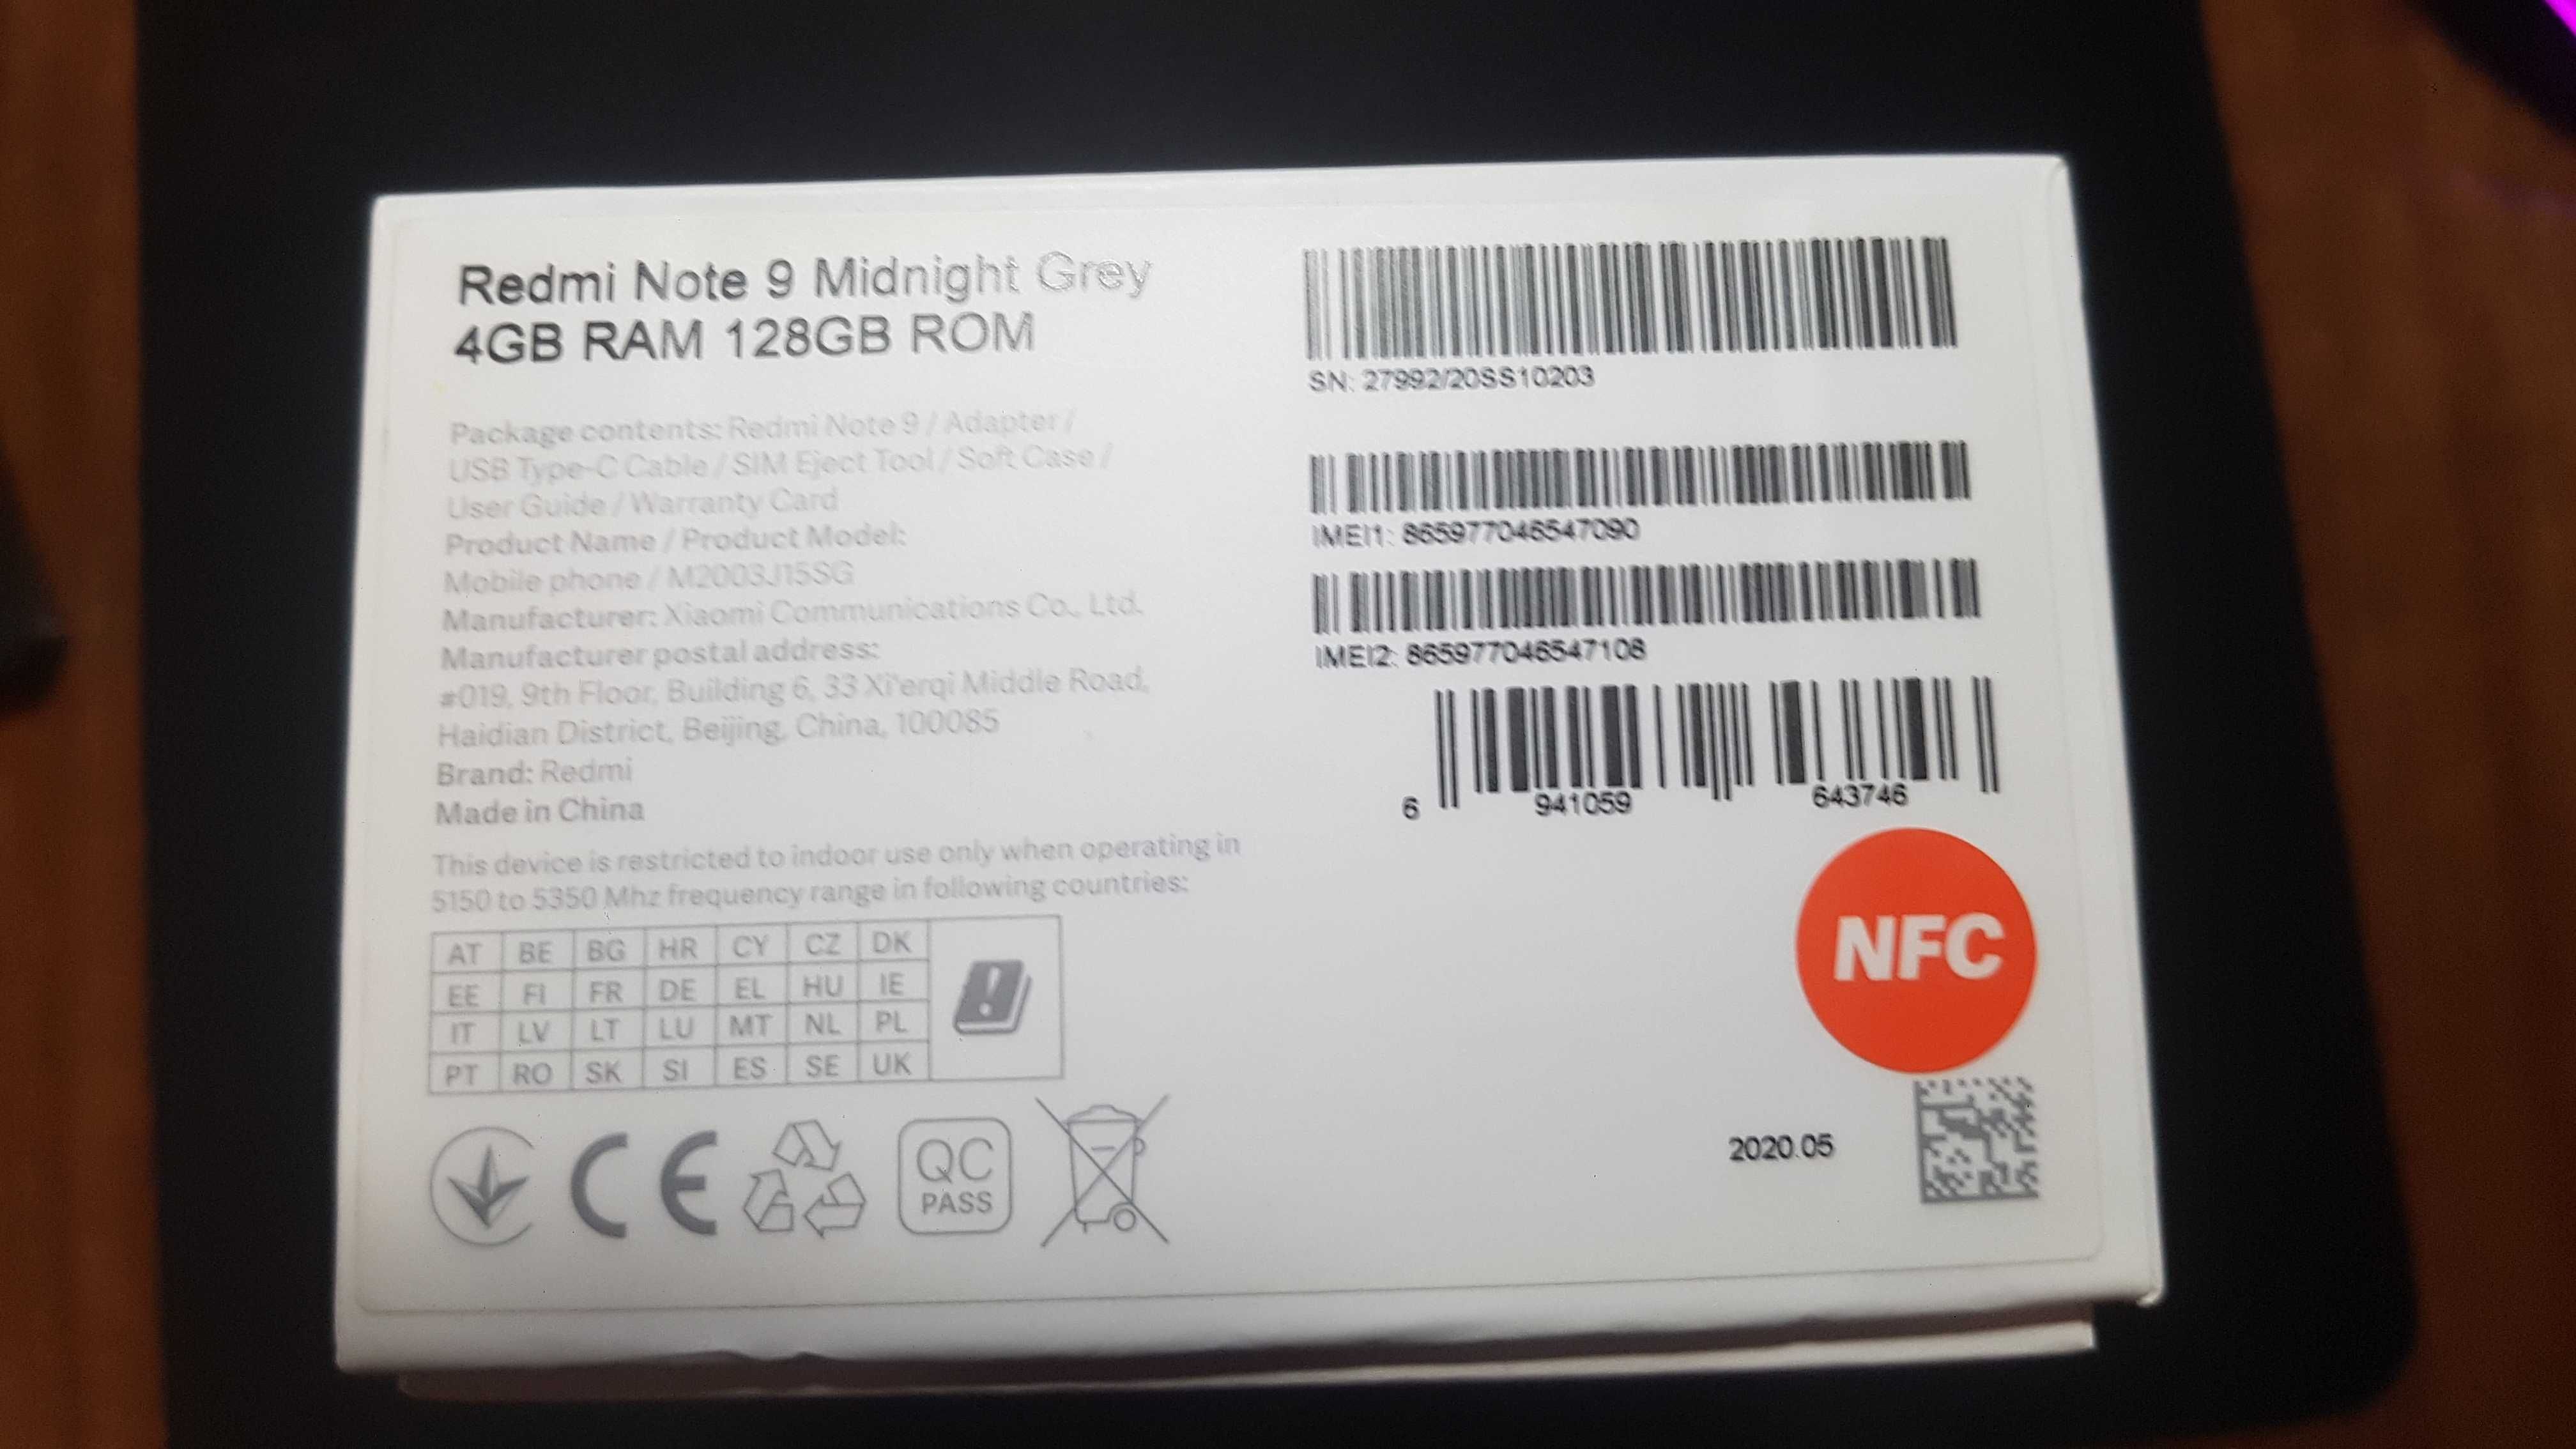 Xiaomi Redmi Note 9 Midnight Grey 4GB RAM 128GB ROM